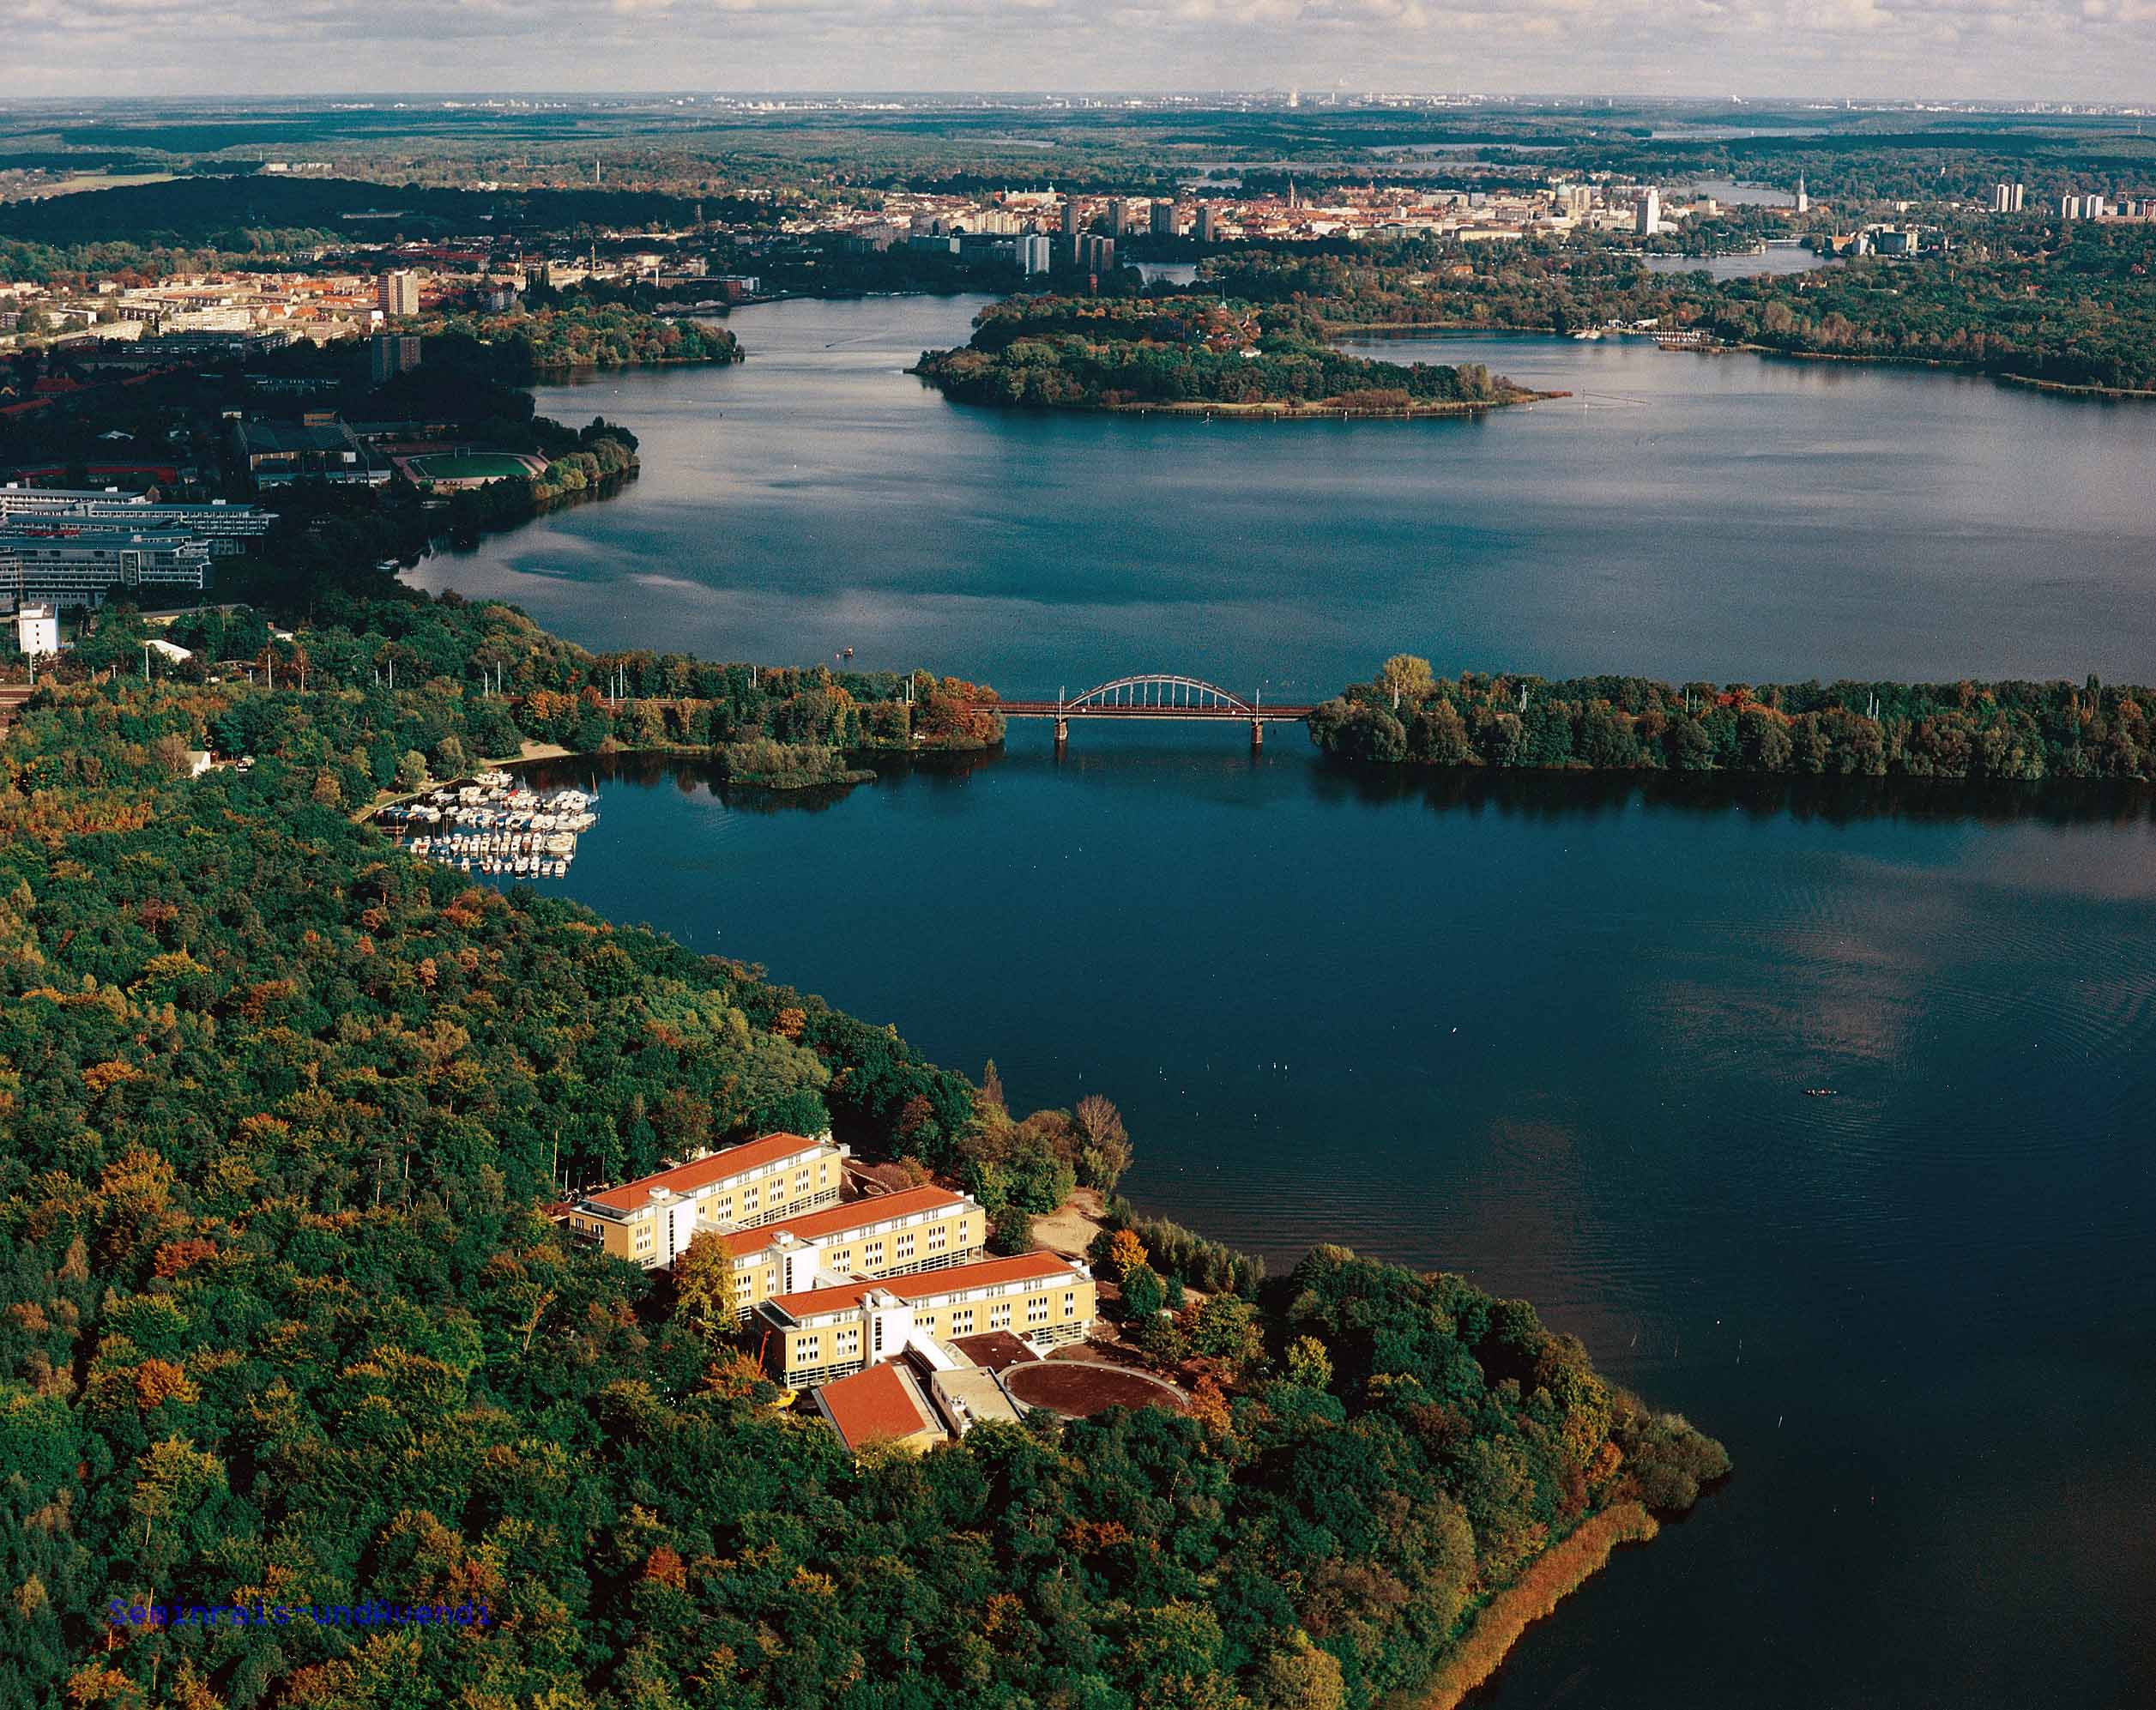 111 Orte in Potsdam die man gesehen haben muss Reiseführer